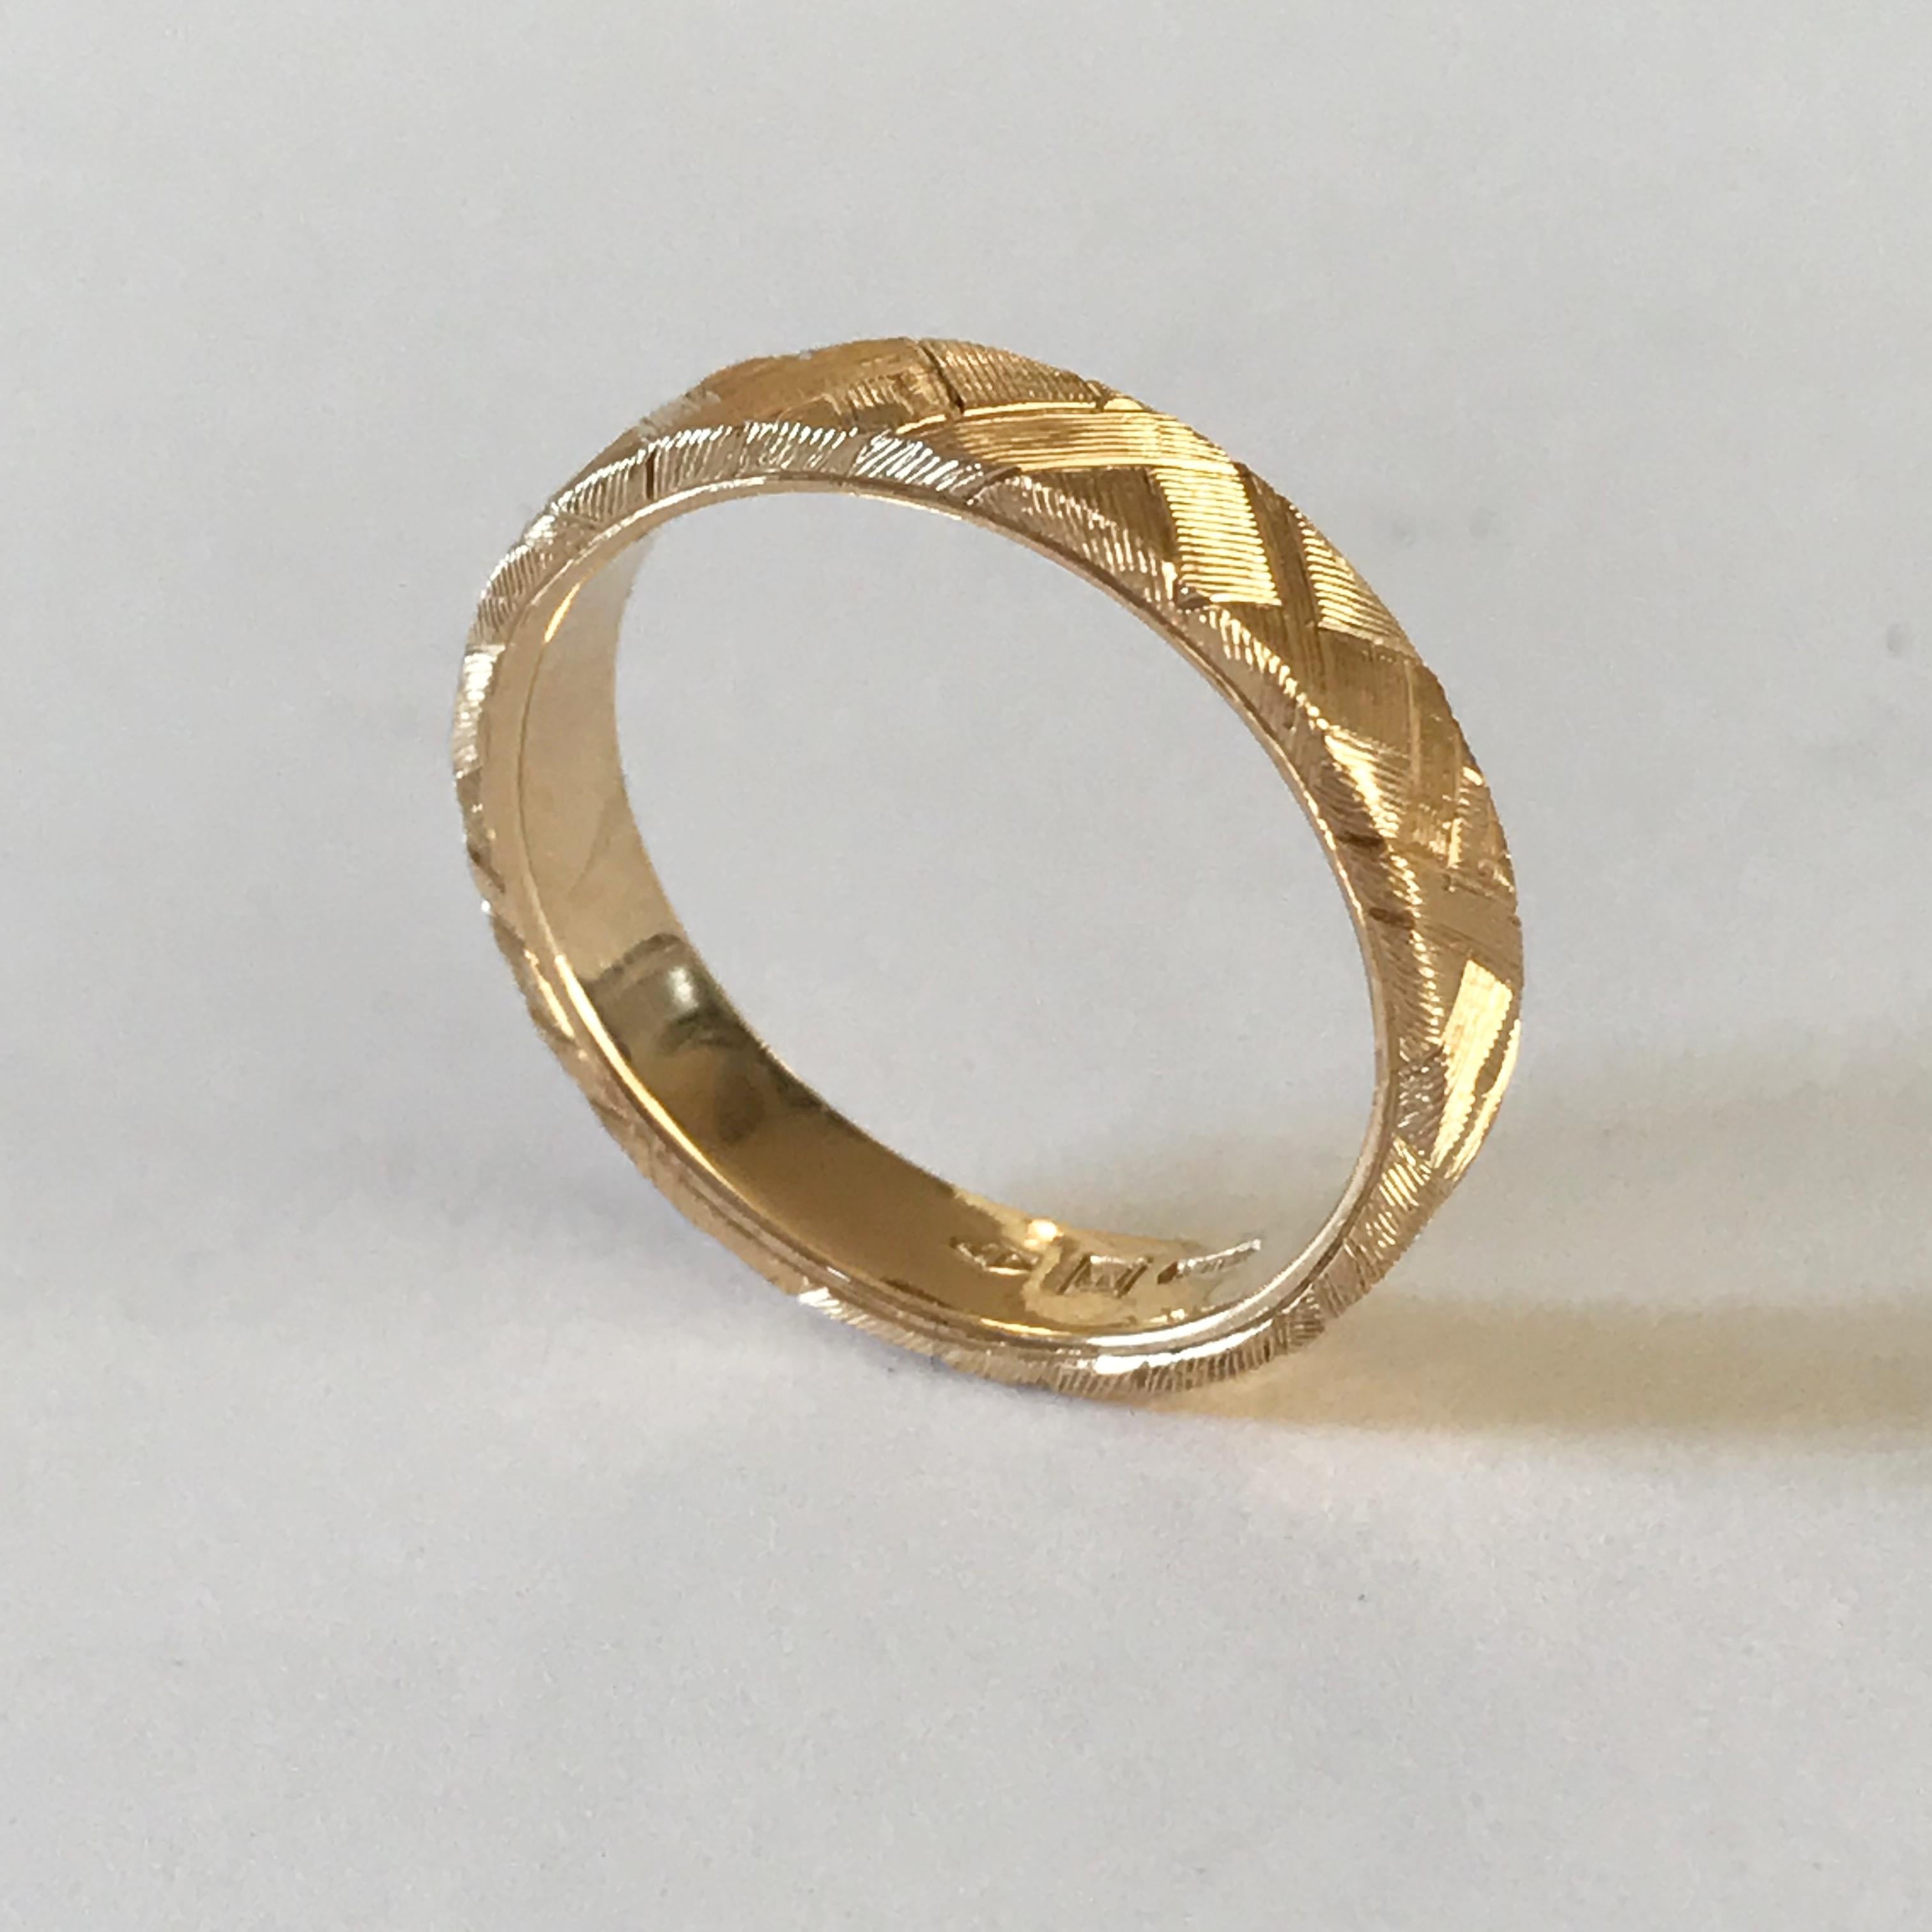 Dalben design  18 k yellow gold band ring  